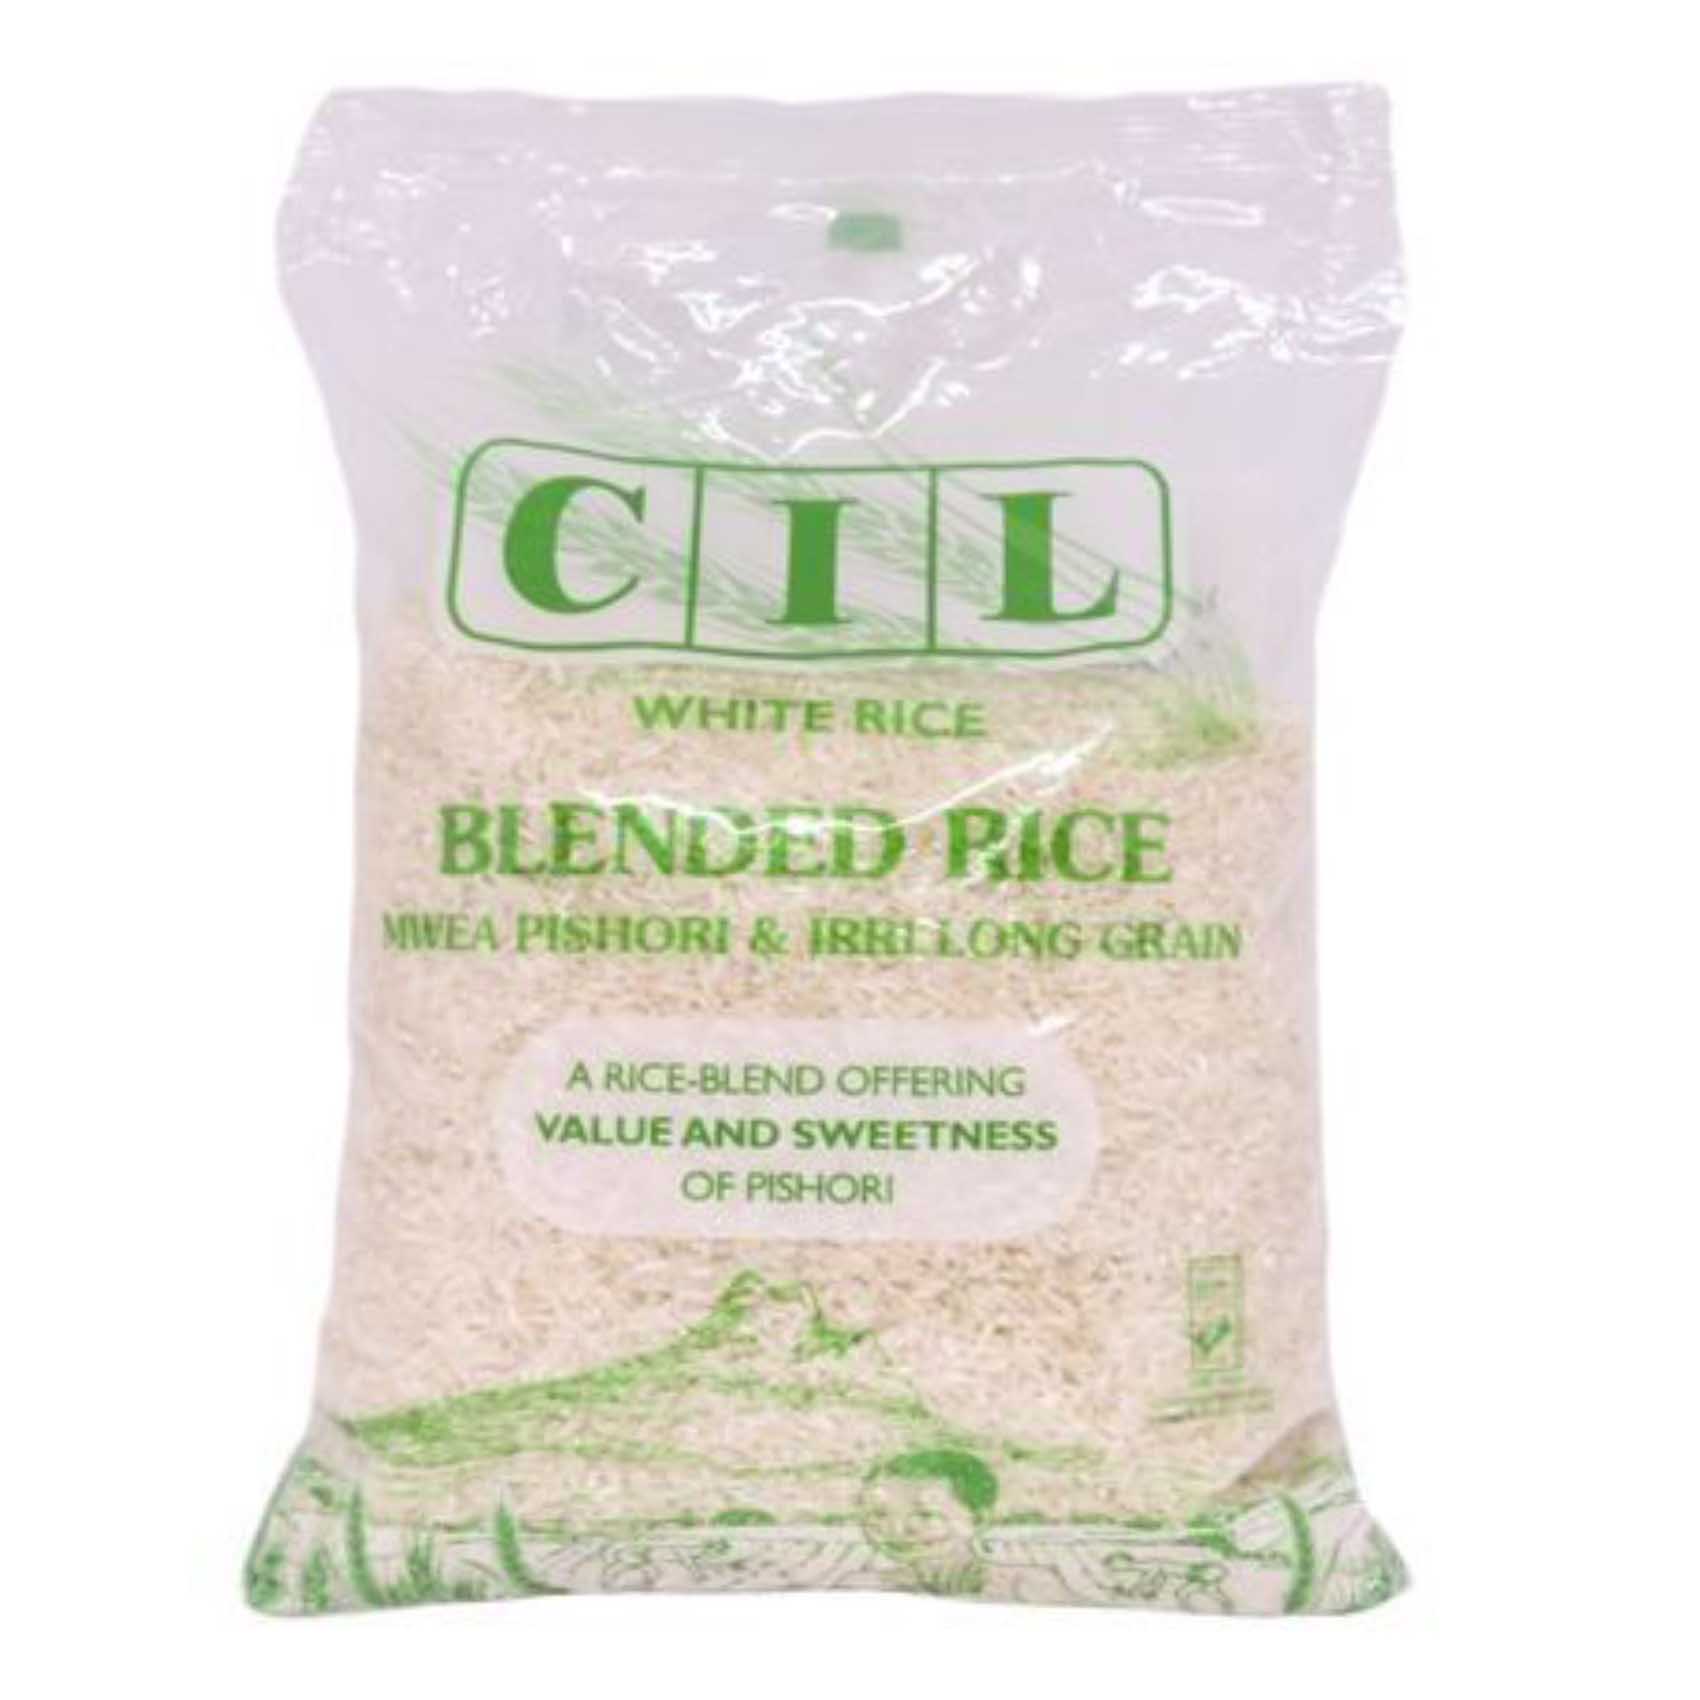 CIL Long Grain Blended White Rice 2Kg